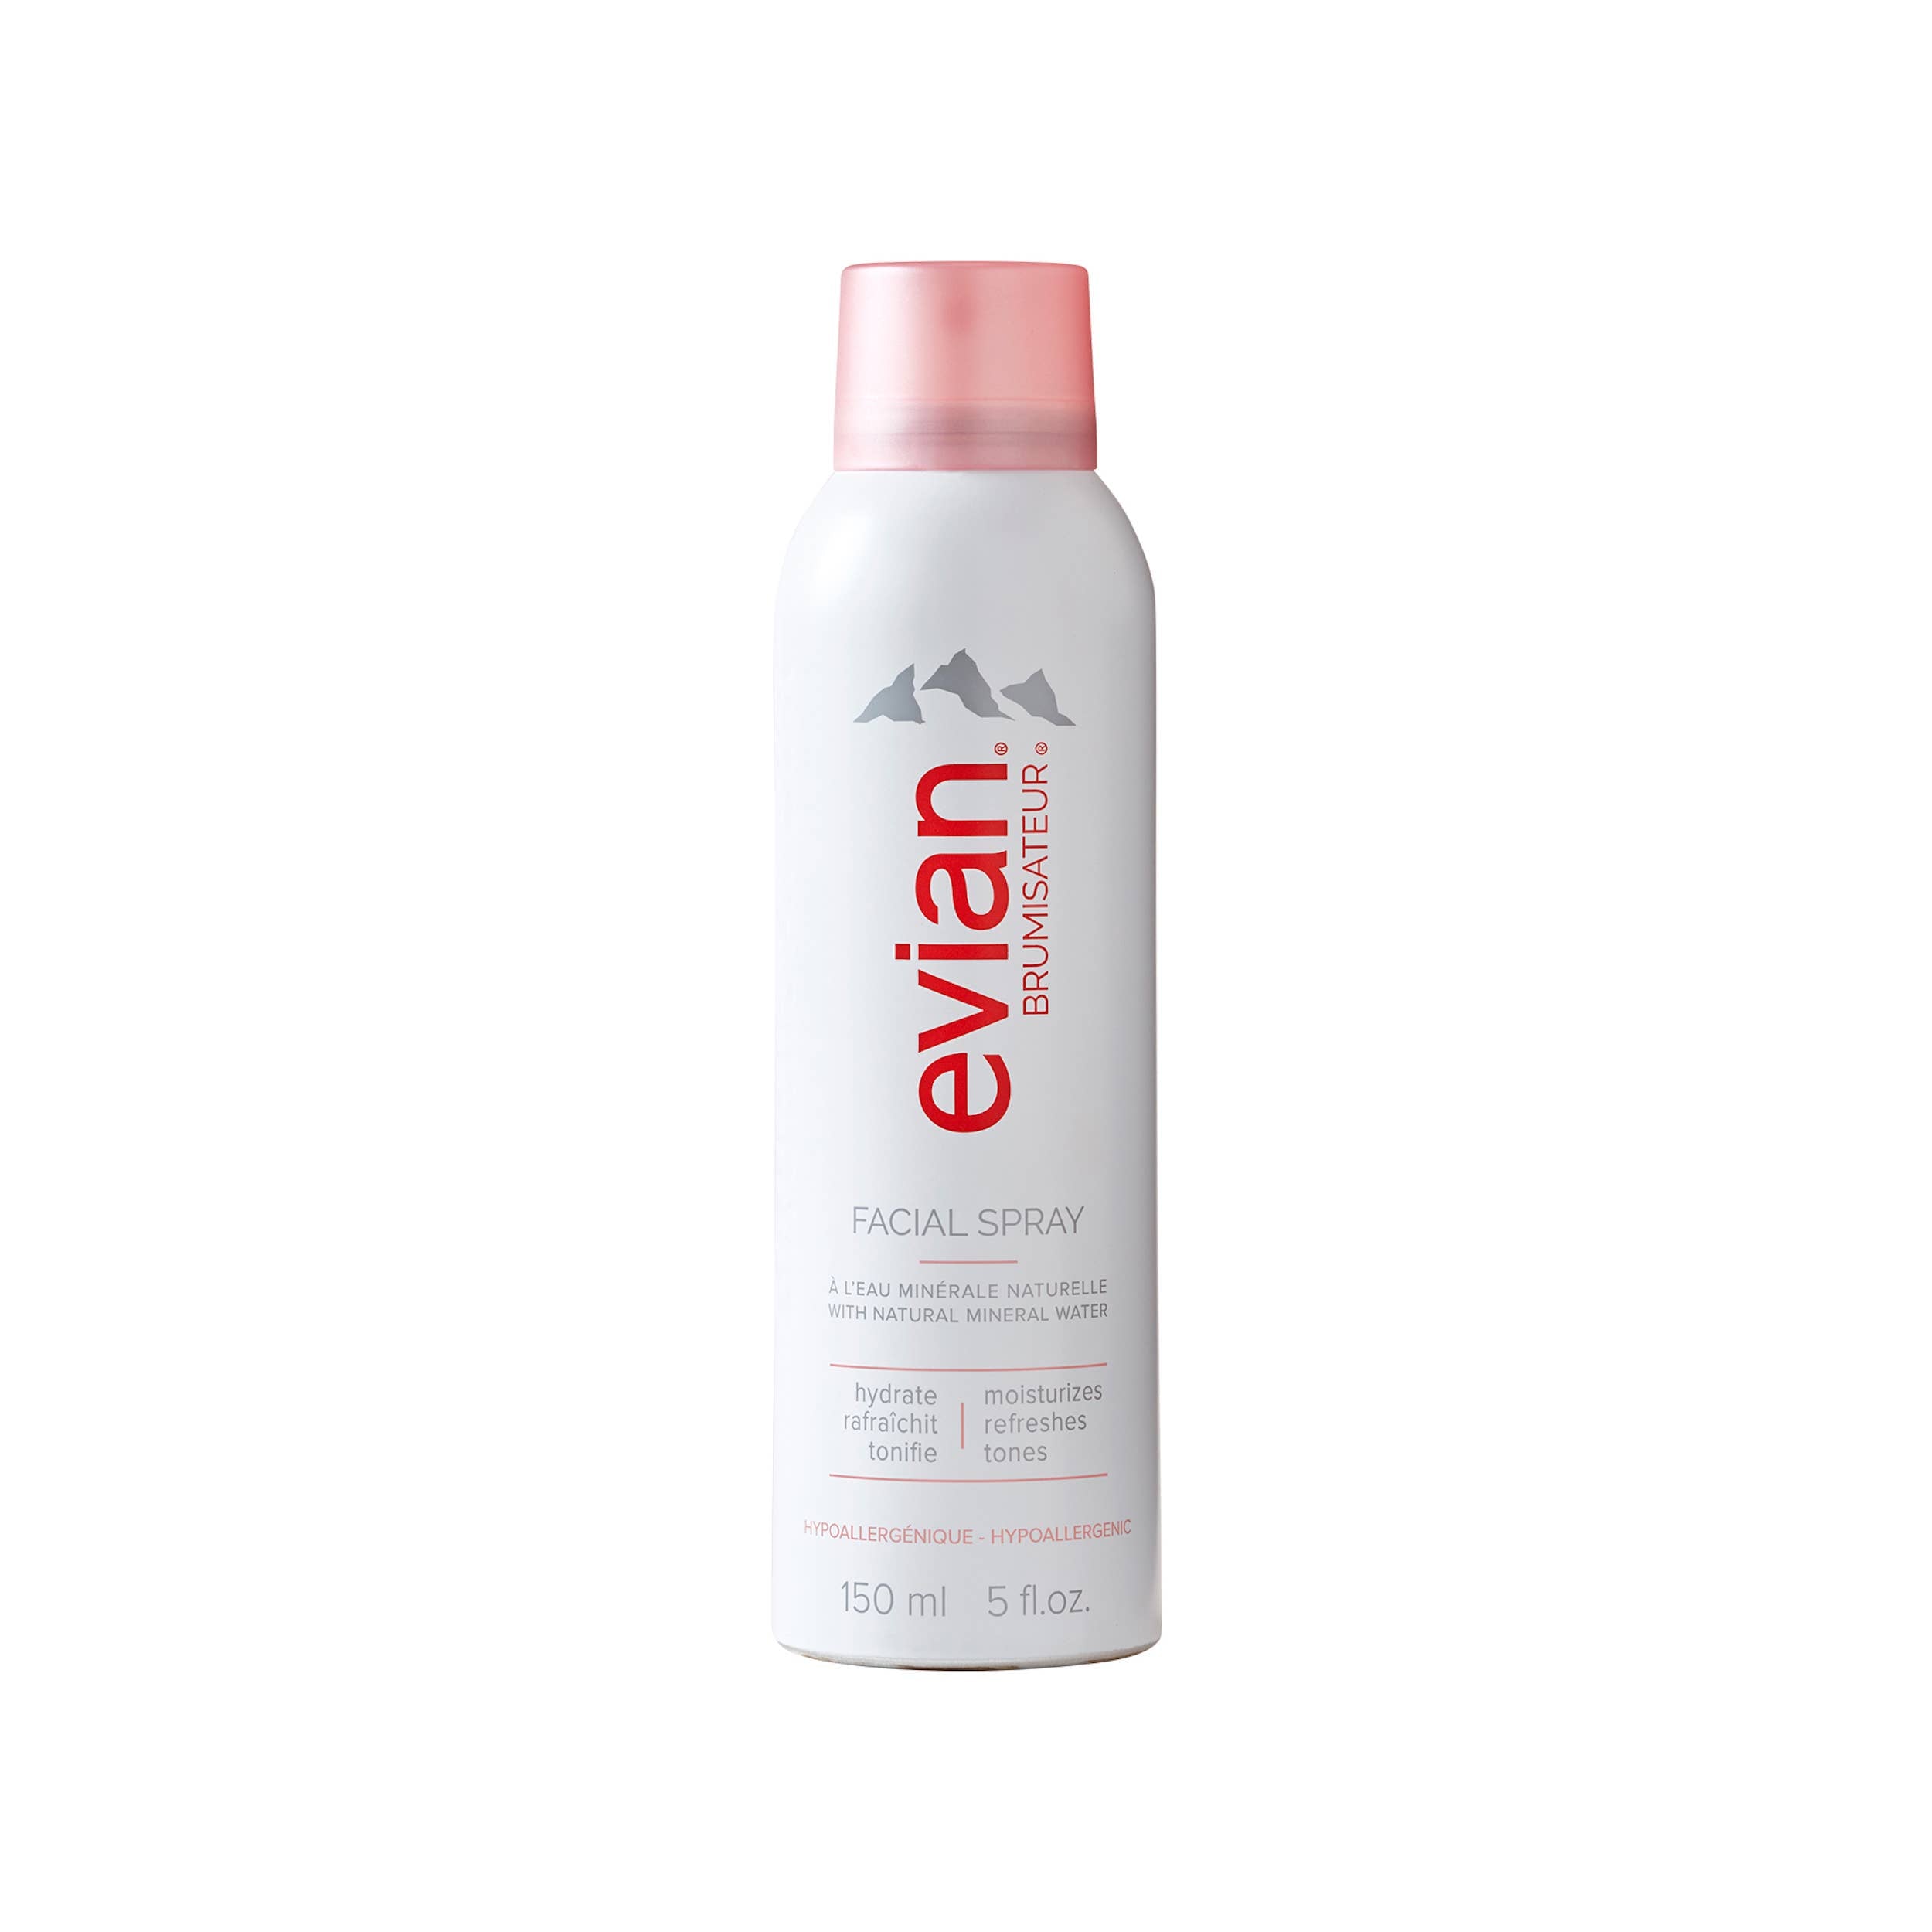 Evian Facial Spray, 5 oz